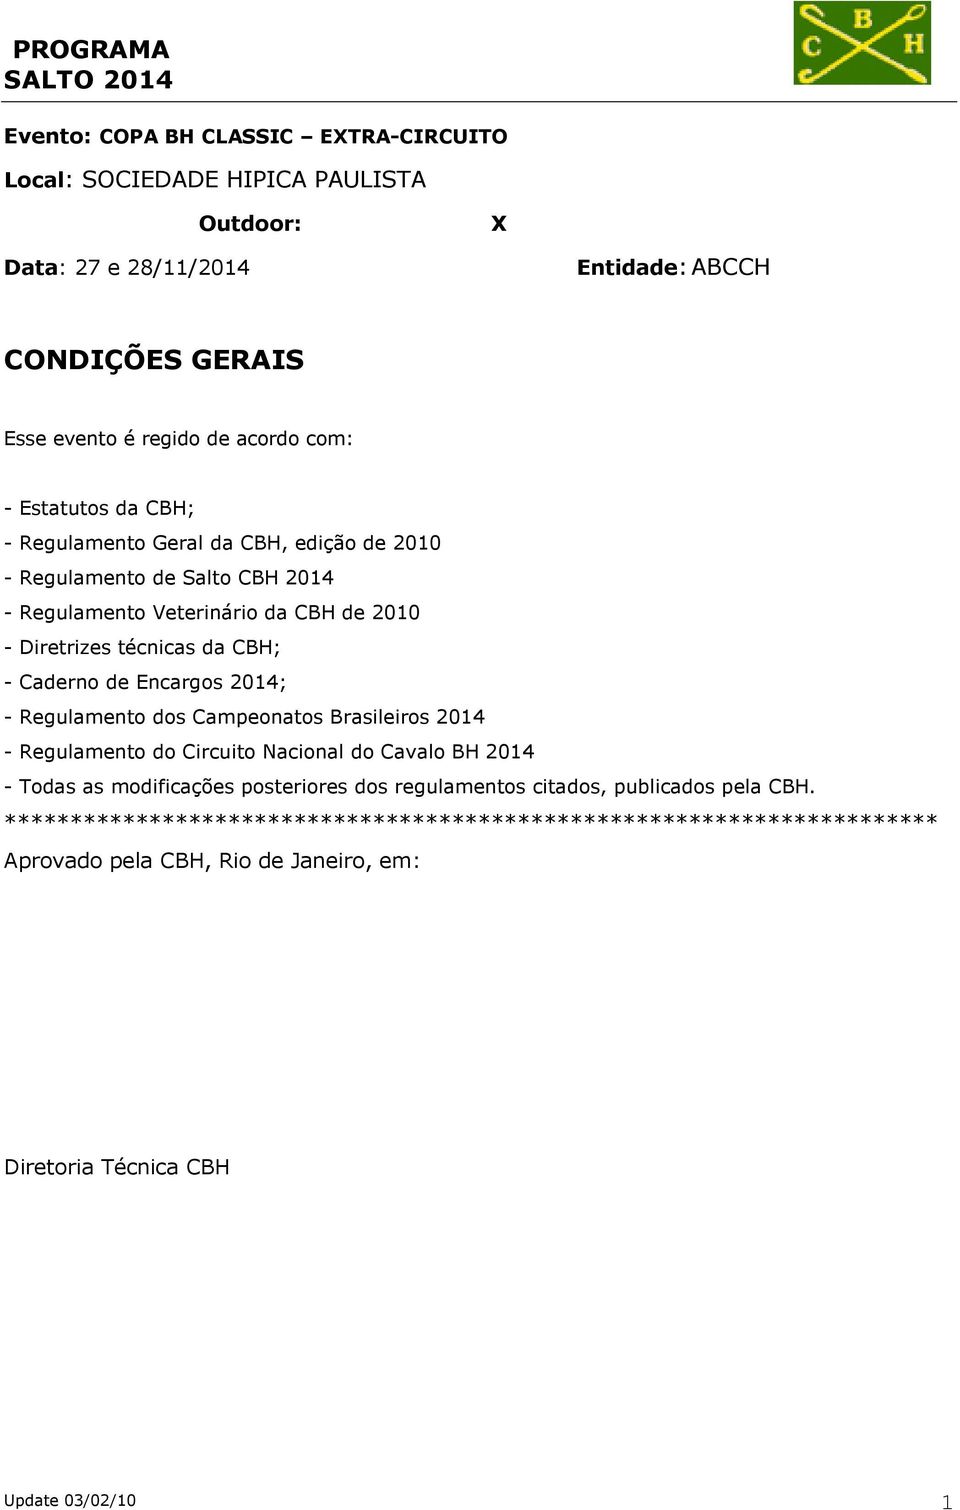 de Encargos 2014; - Regulamento dos Campeonatos Brasileiros 2014 - Regulamento do Circuito Nacional do Cavalo BH 2014 - Todas as modificações posteriores dos regulamentos